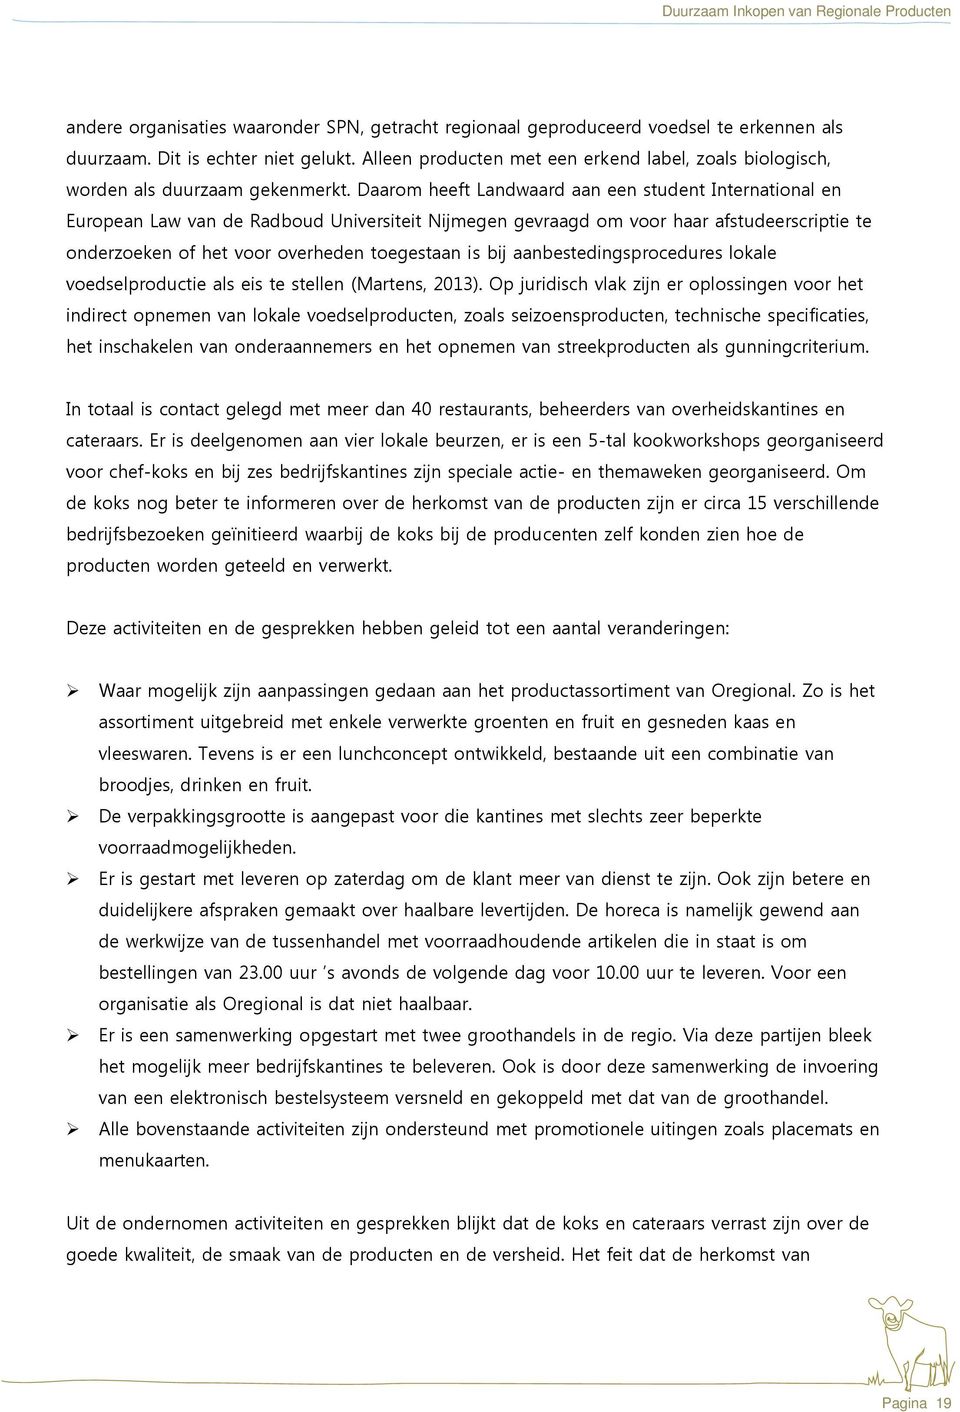 Daarom heeft Landwaard aan een student International en European Law van de Radboud Universiteit Nijmegen gevraagd om voor haar afstudeerscriptie te onderzoeken of het voor overheden toegestaan is